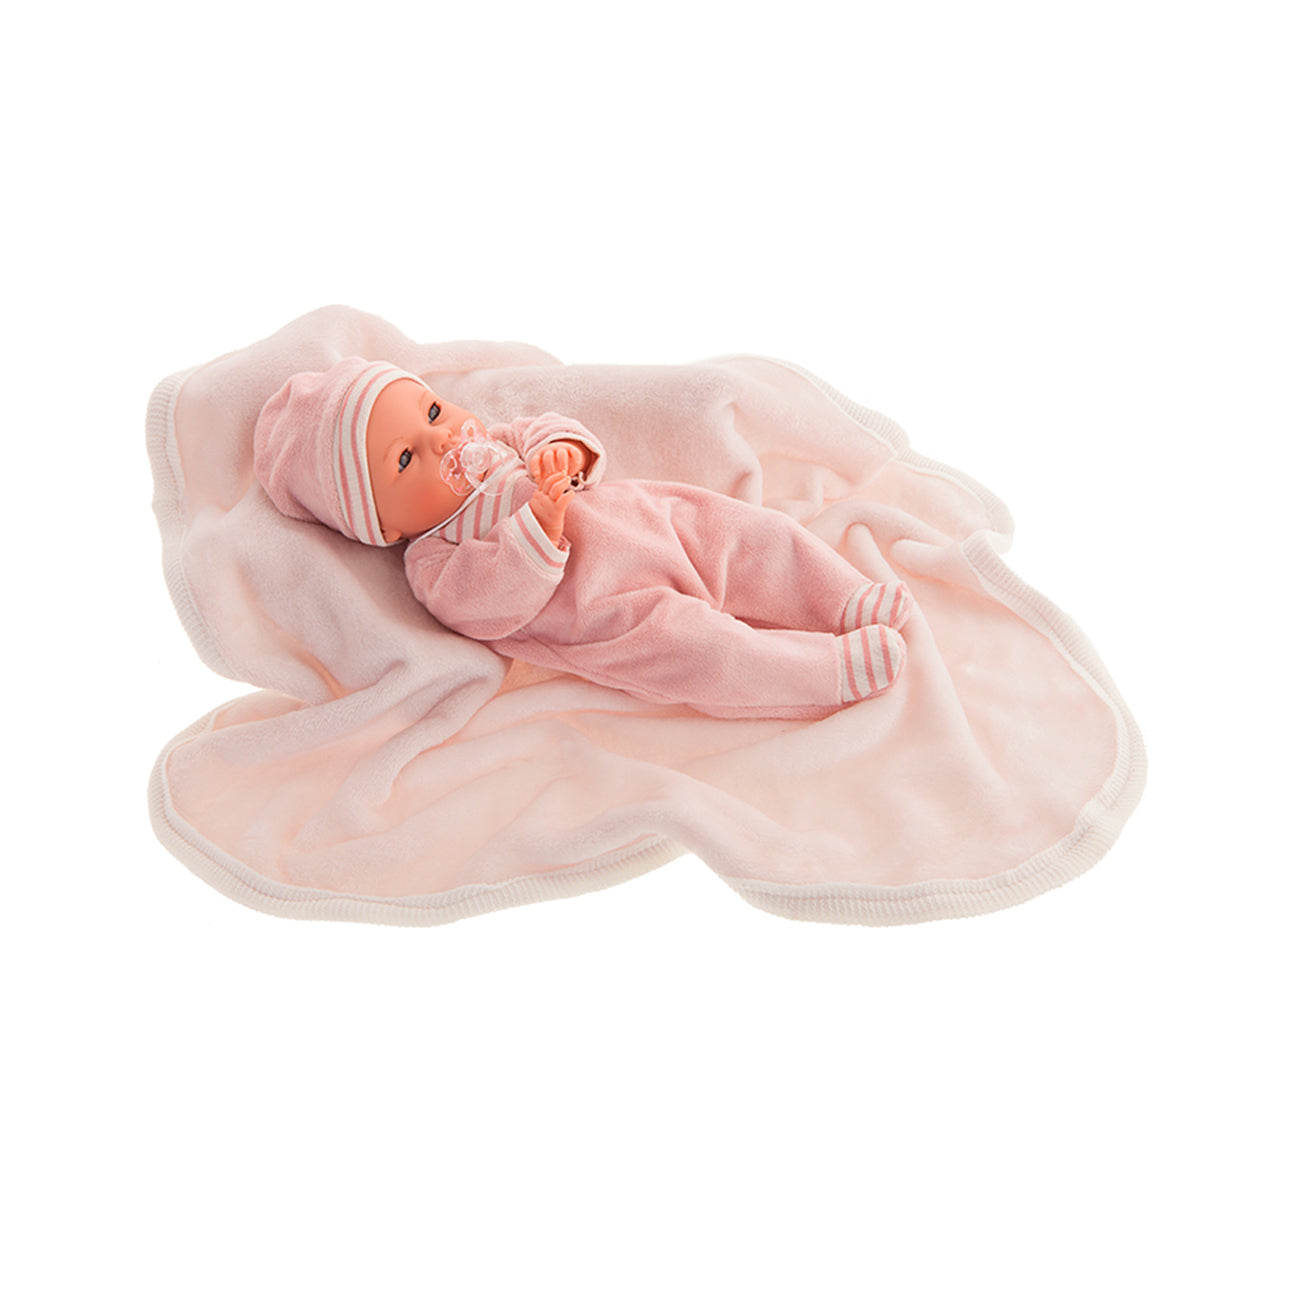 Papusa fetita Bimba cu paturica in pijama roz cu mecanism de plans, 37 cm, +3 ani, Antonio Juan